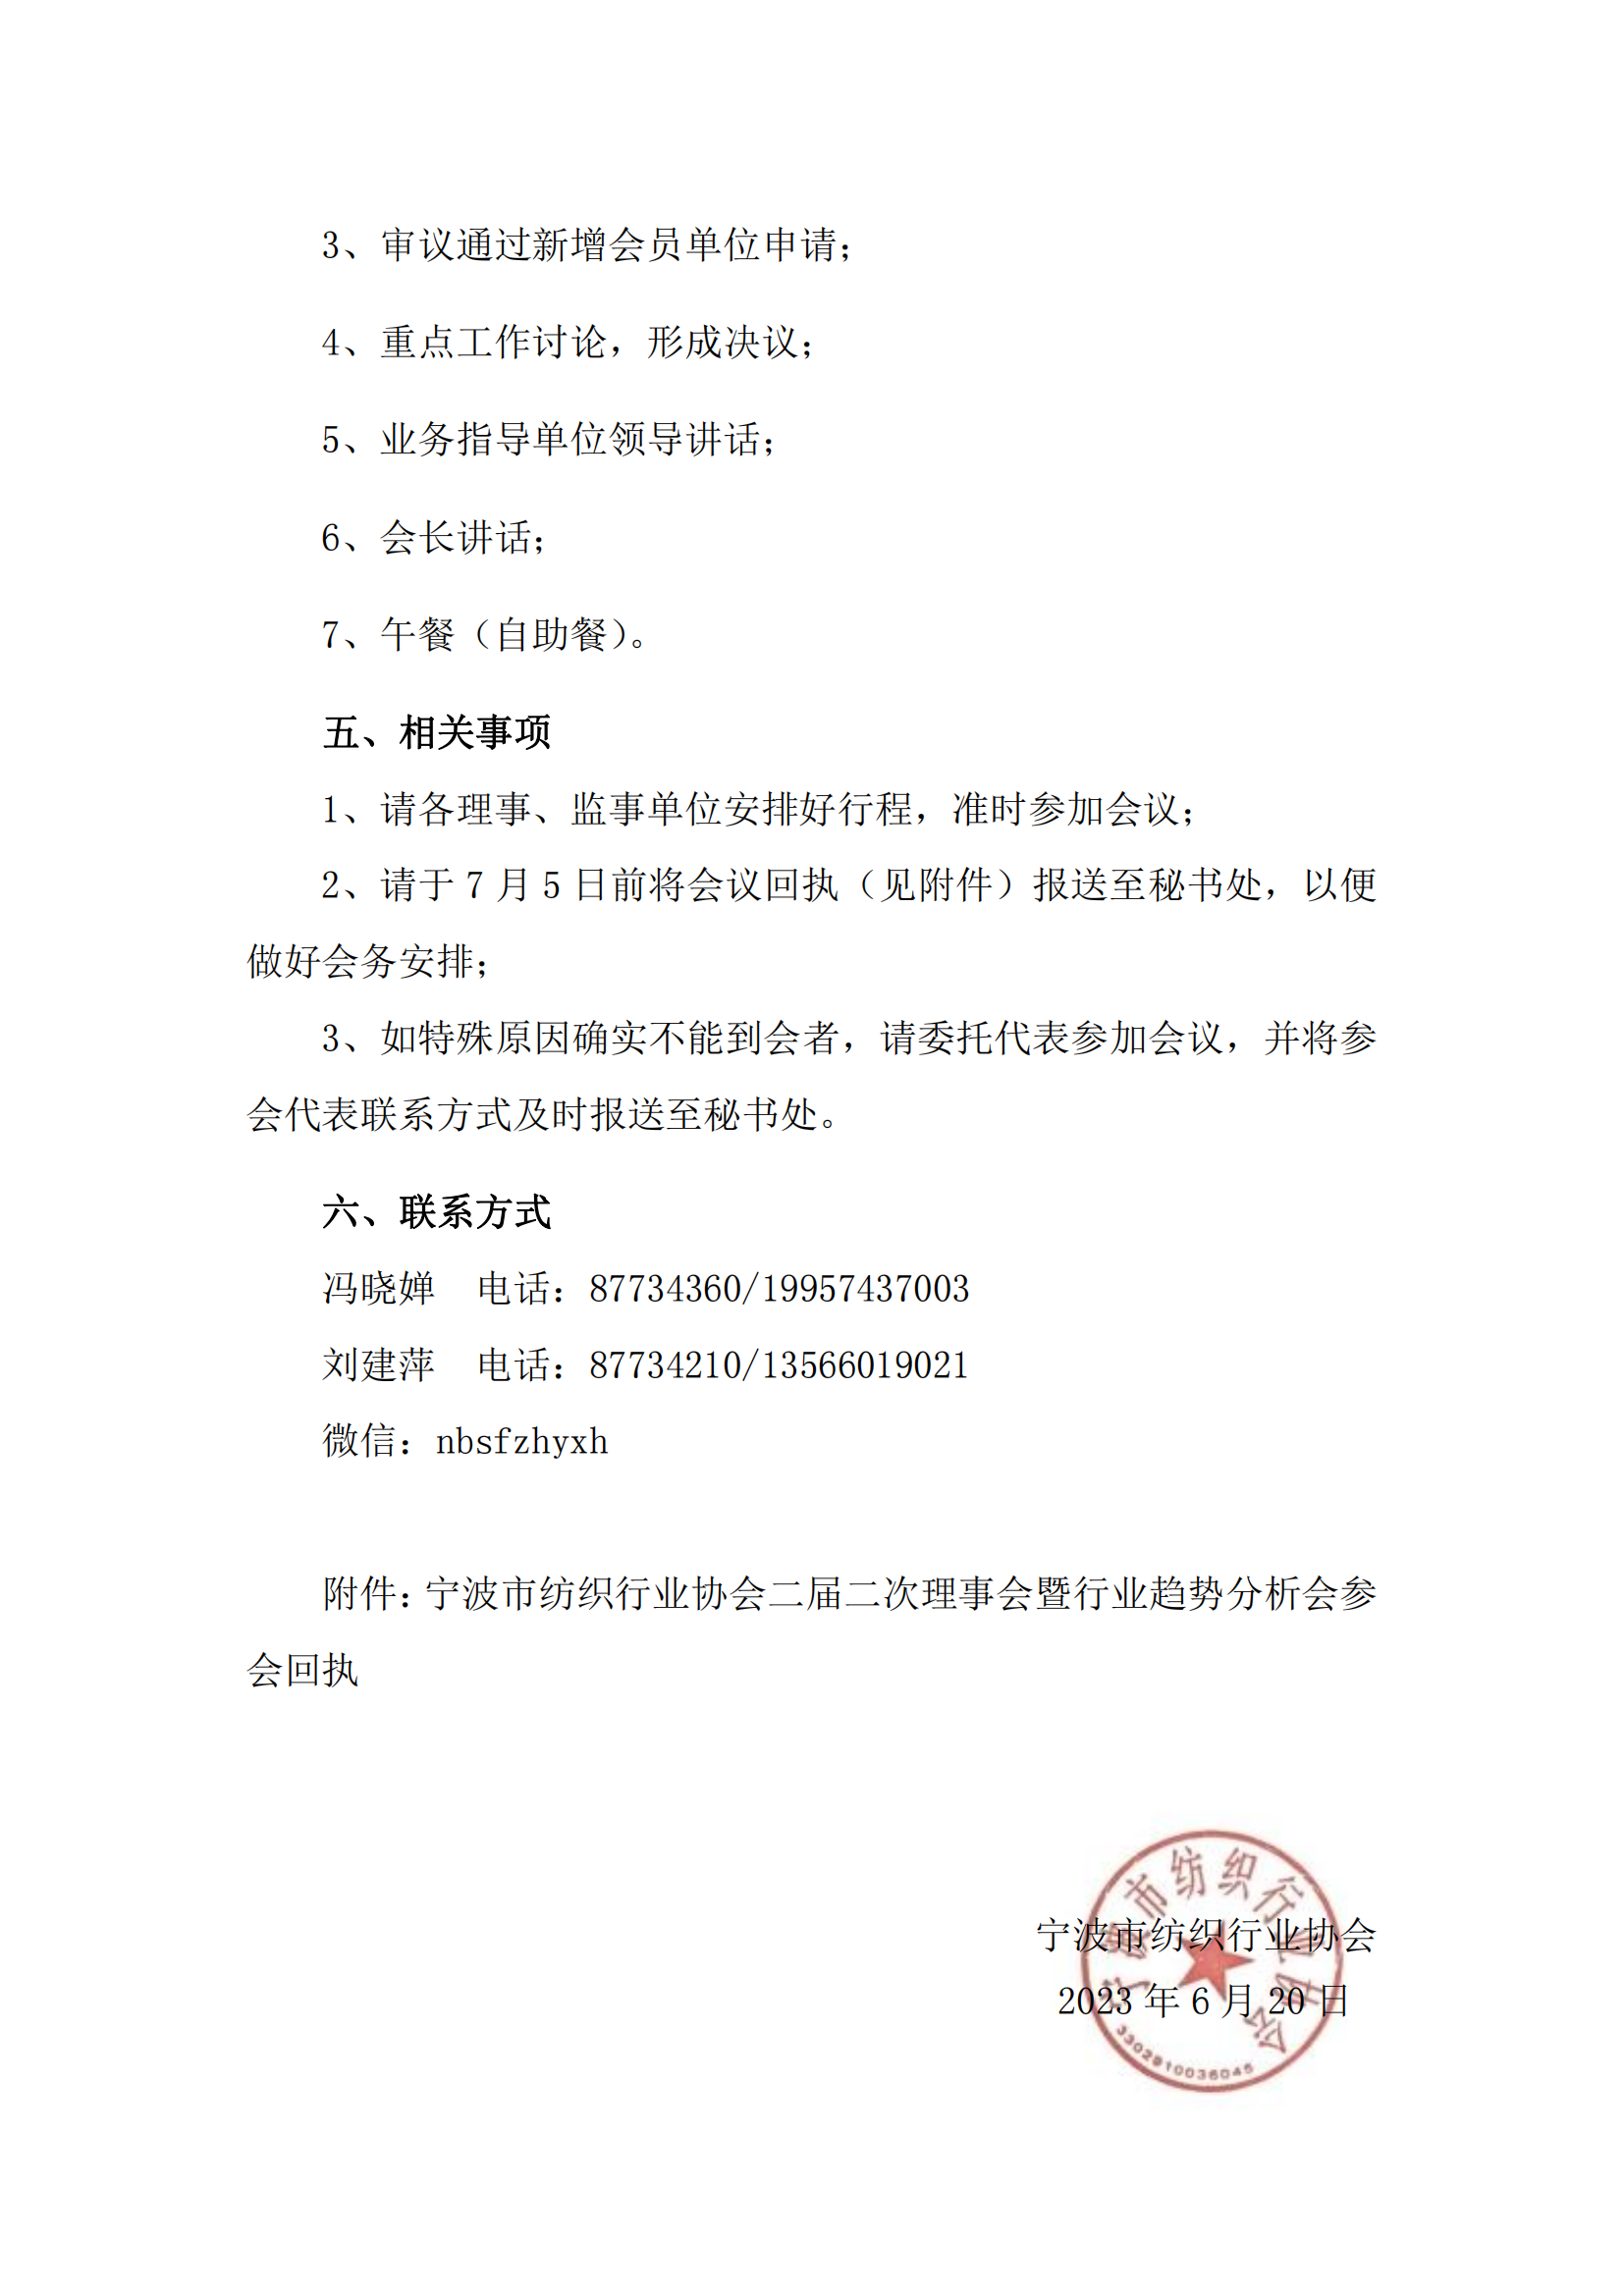 宁波市纺织行业协会关于召开二届二次理事会的通知_01.png